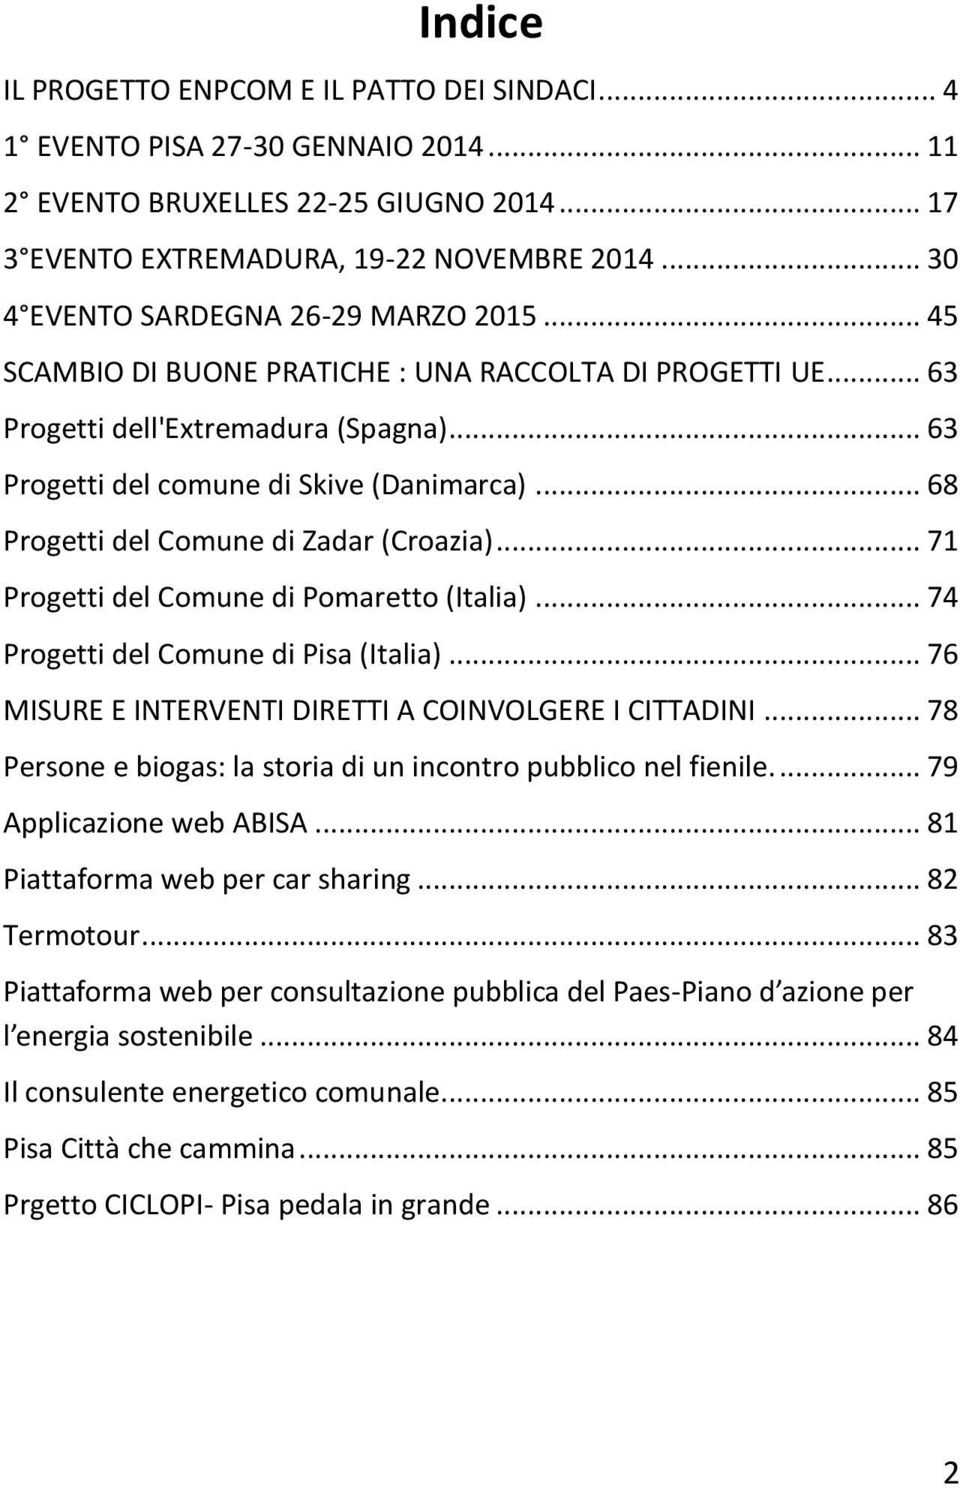 .. 68 Progetti del Comune di Zadar (Croazia)... 71 Progetti del Comune di Pomaretto (Italia)... 74 Progetti del Comune di Pisa (Italia)... 76 MISURE E INTERVENTI DIRETTI A COINVOLGERE I CITTADINI.